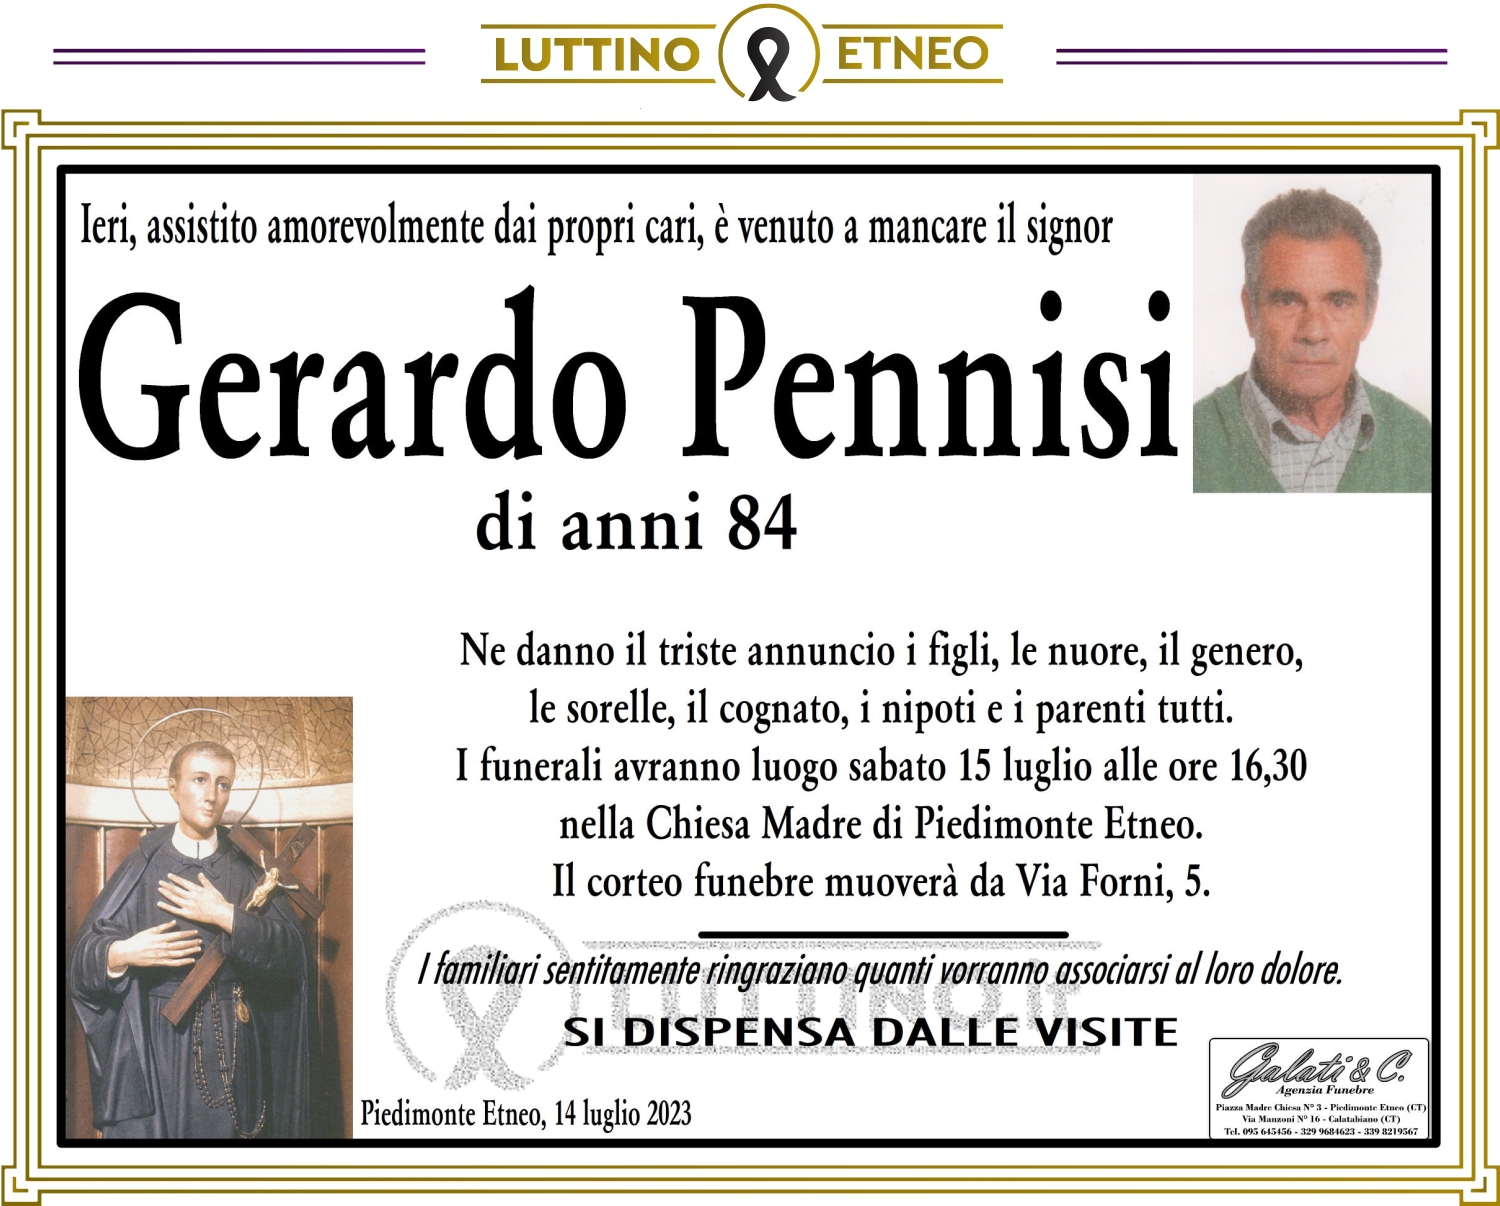 Gerardo Pennisi